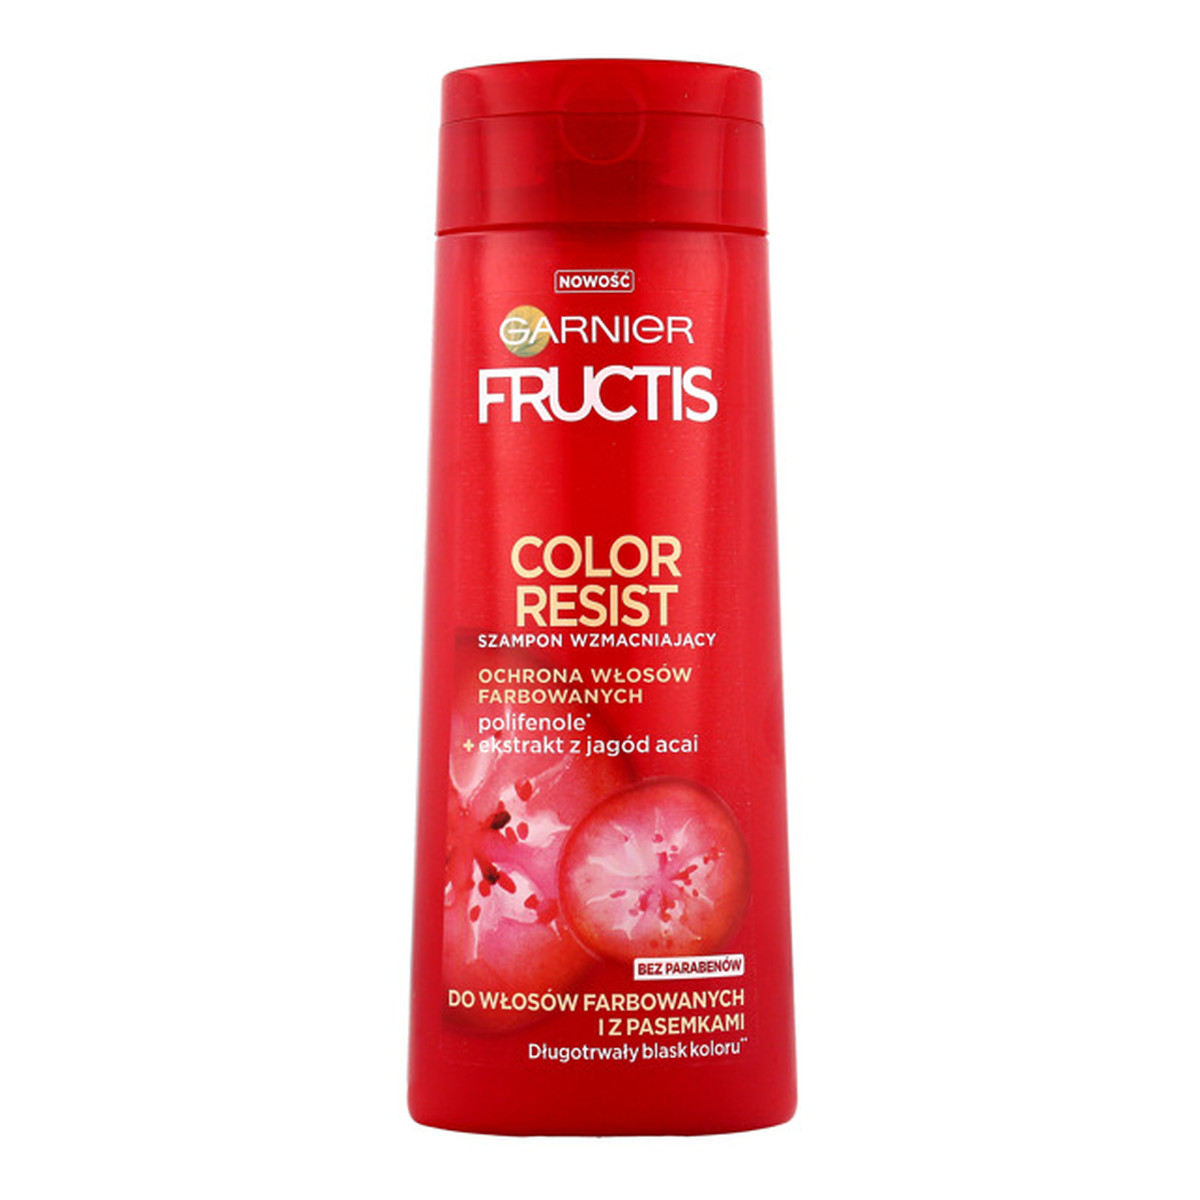 Garnier Fructis Color Resist szampon do włosów farbowanych i z pasemkami 250ml